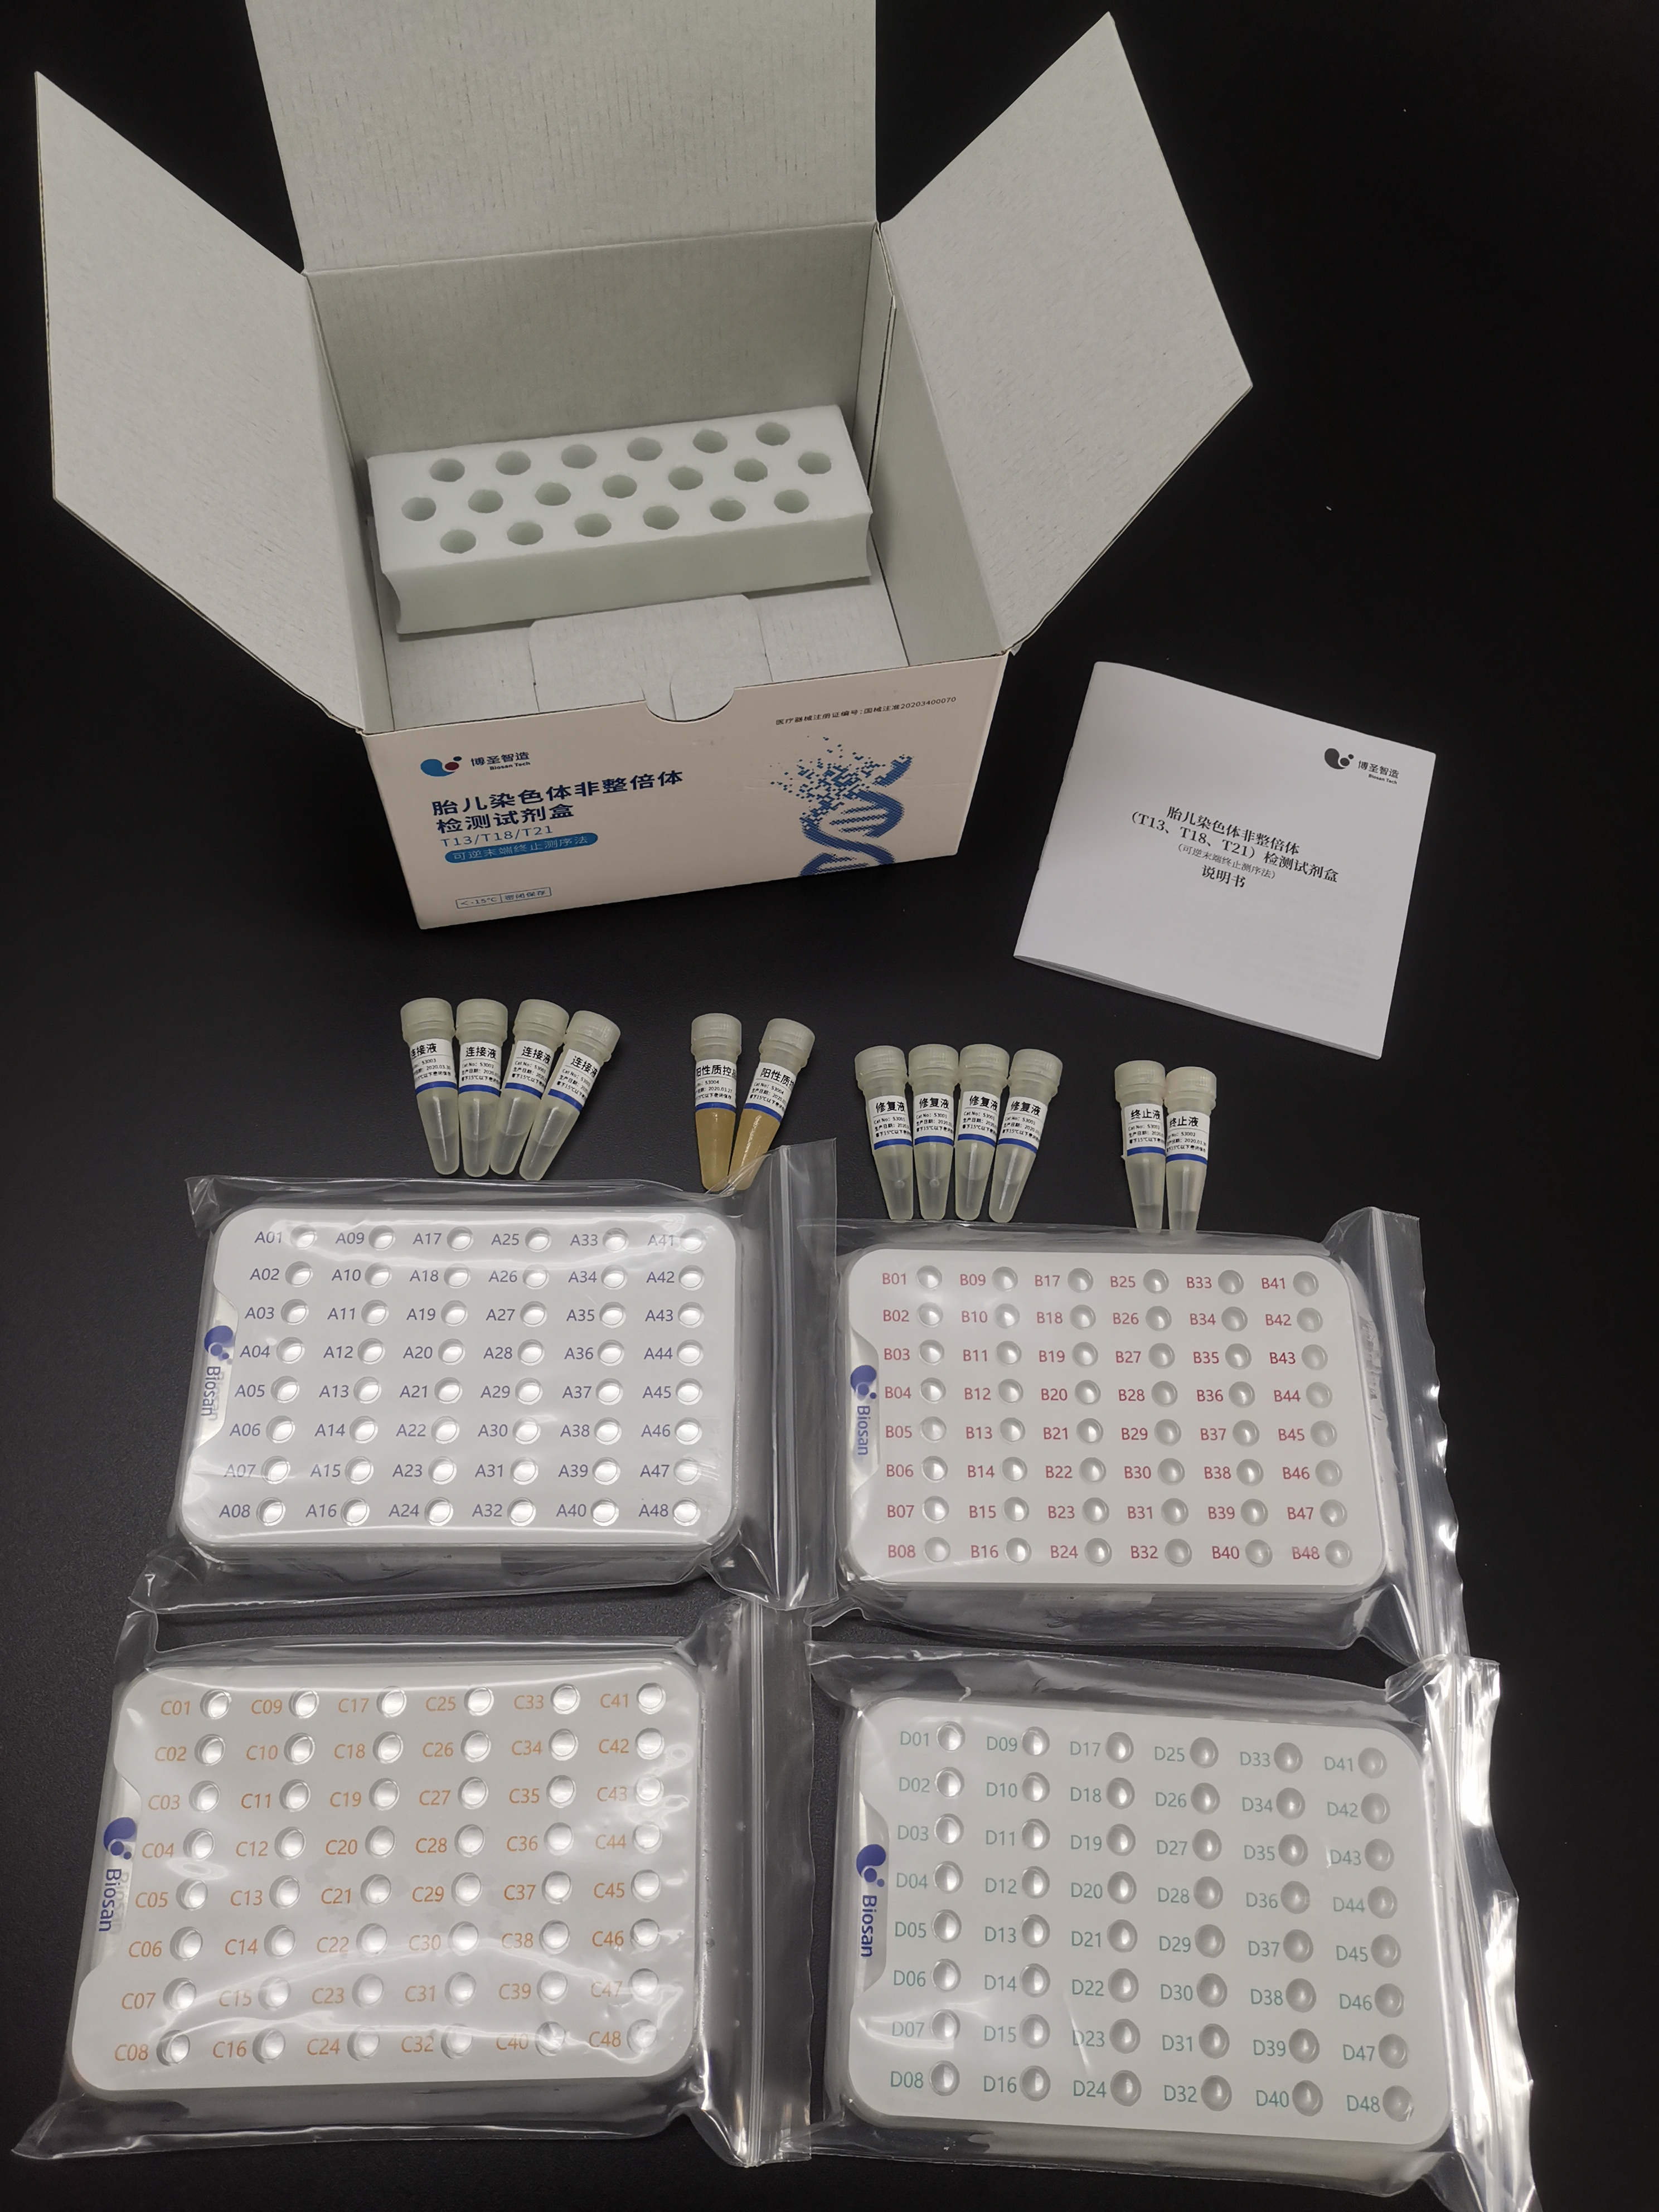 【杰毅麦特】胎儿染色体非整倍体（T13、T18、T21）检测试剂盒（可逆末端终止测序法）-云医购